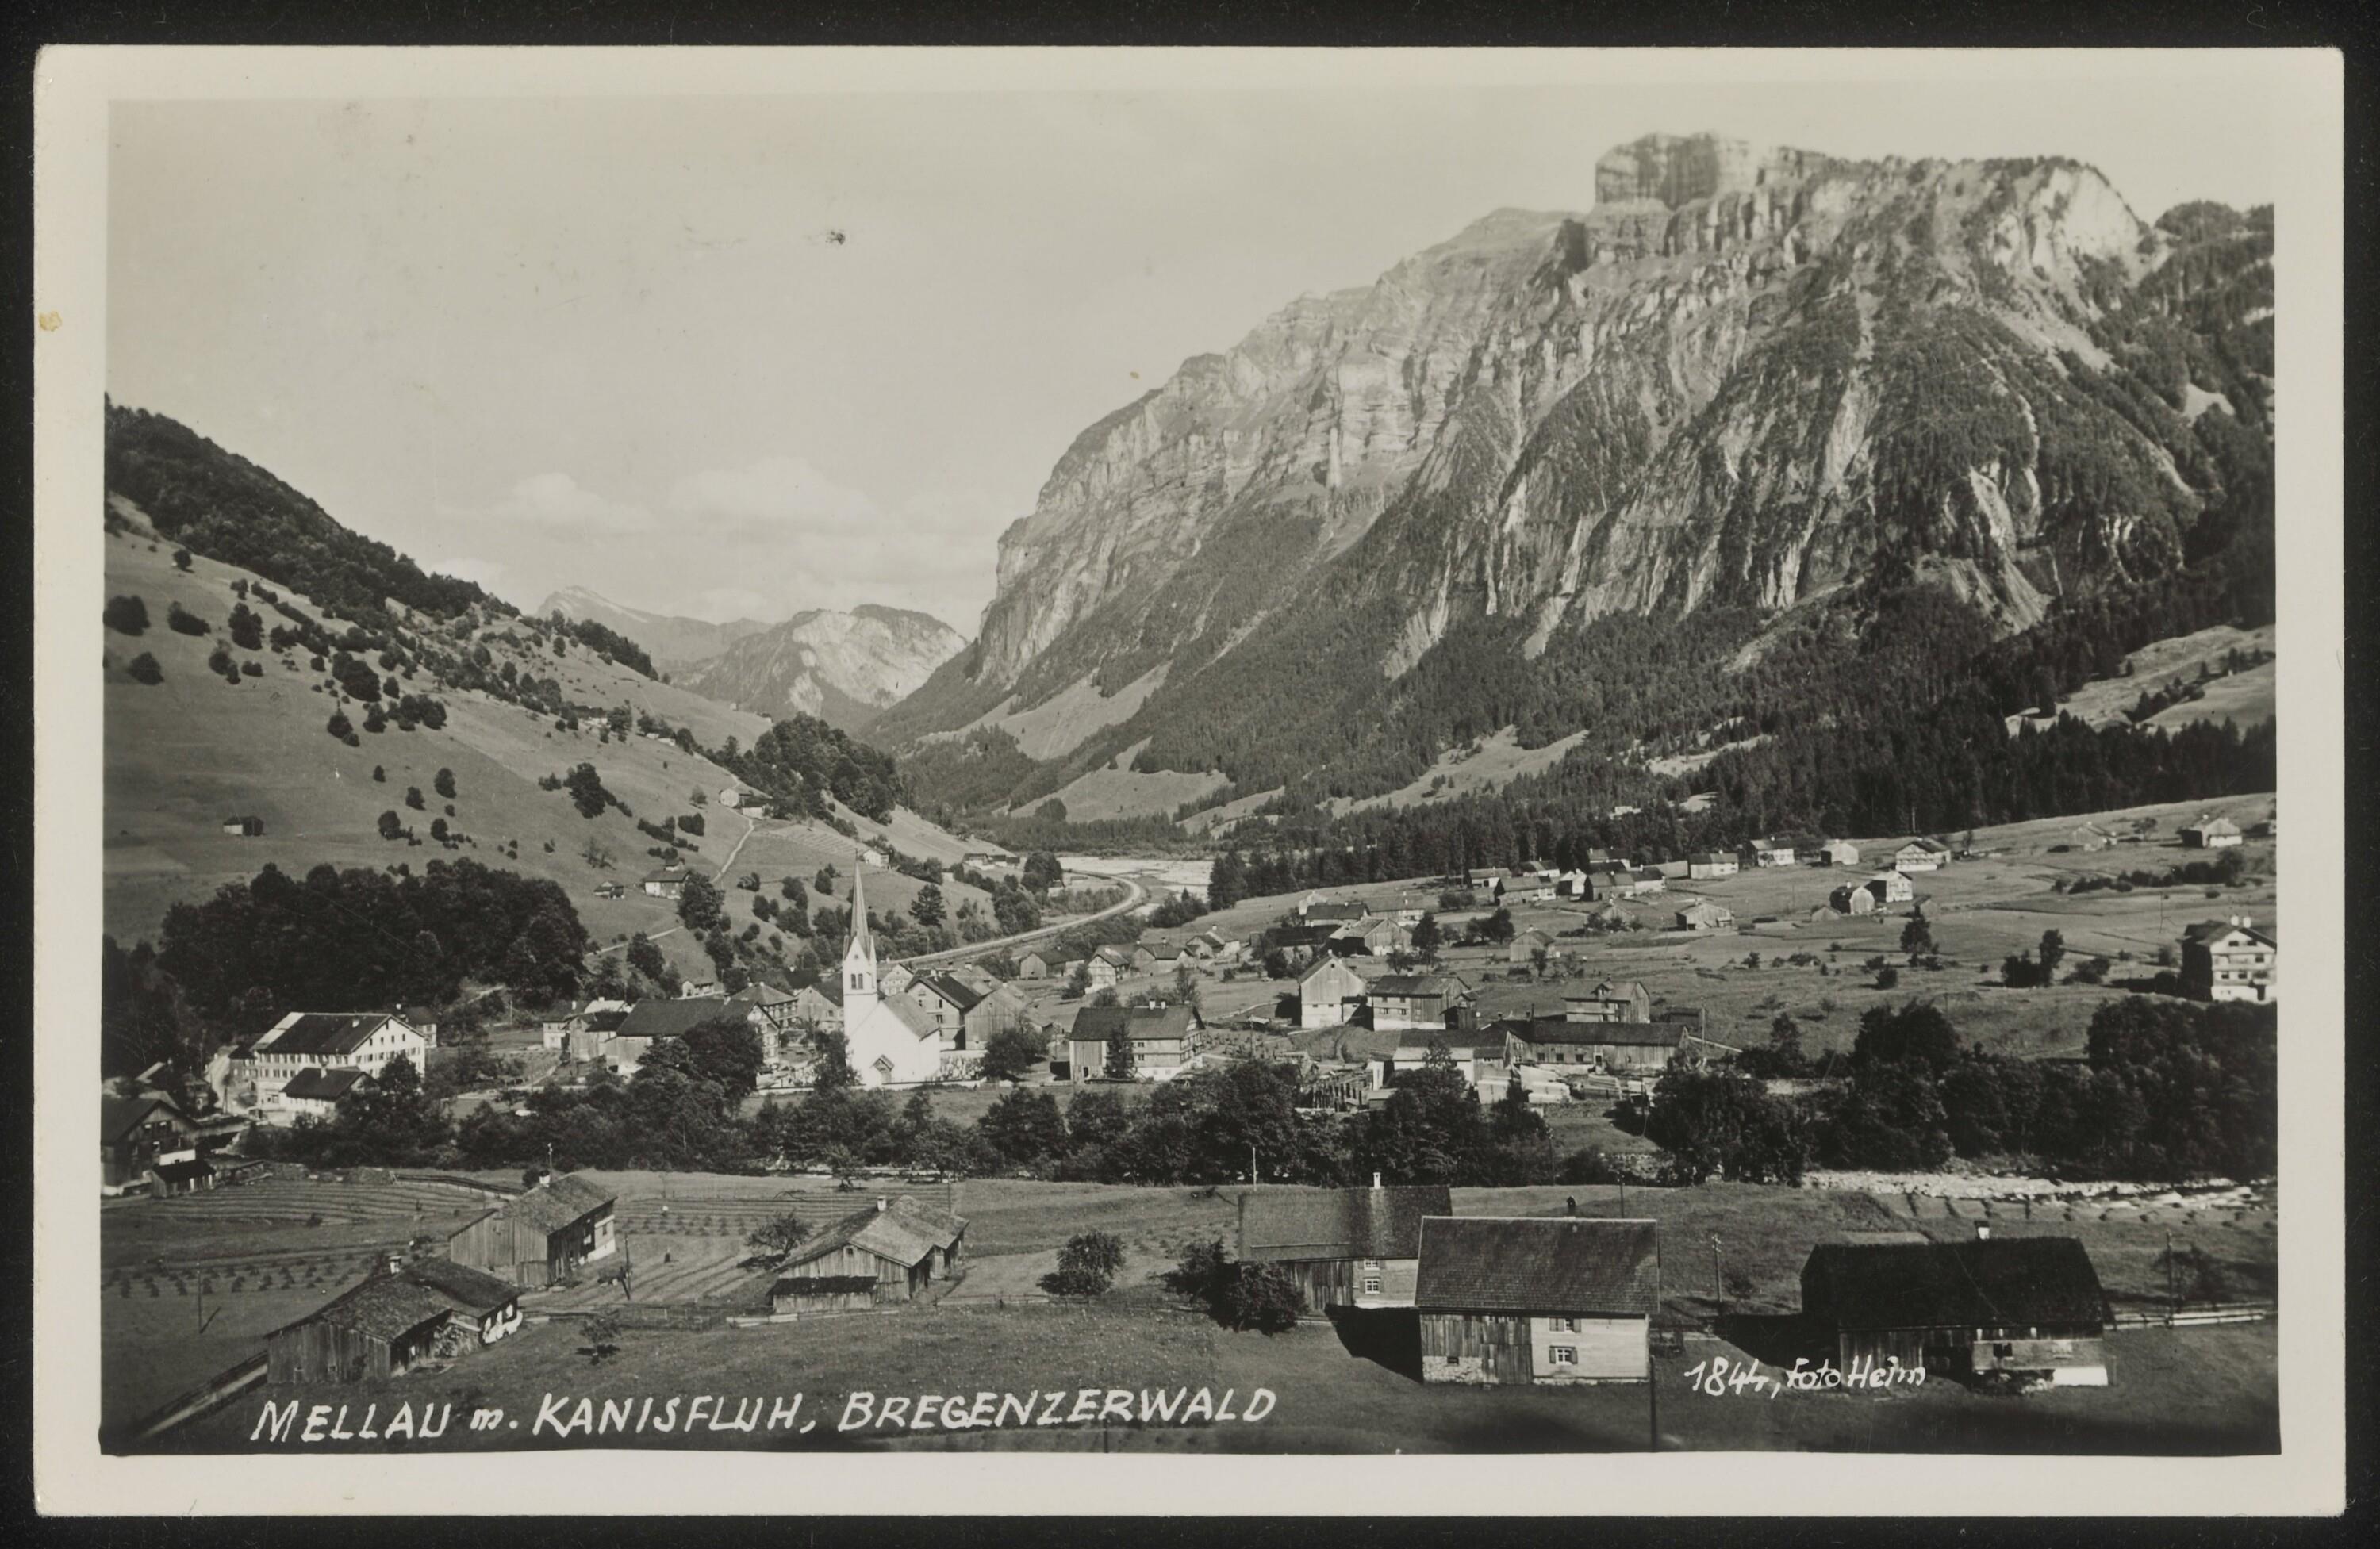 Mellau m. Kanisfluh, Bregenzerwald></div>


    <hr>
    <div class=